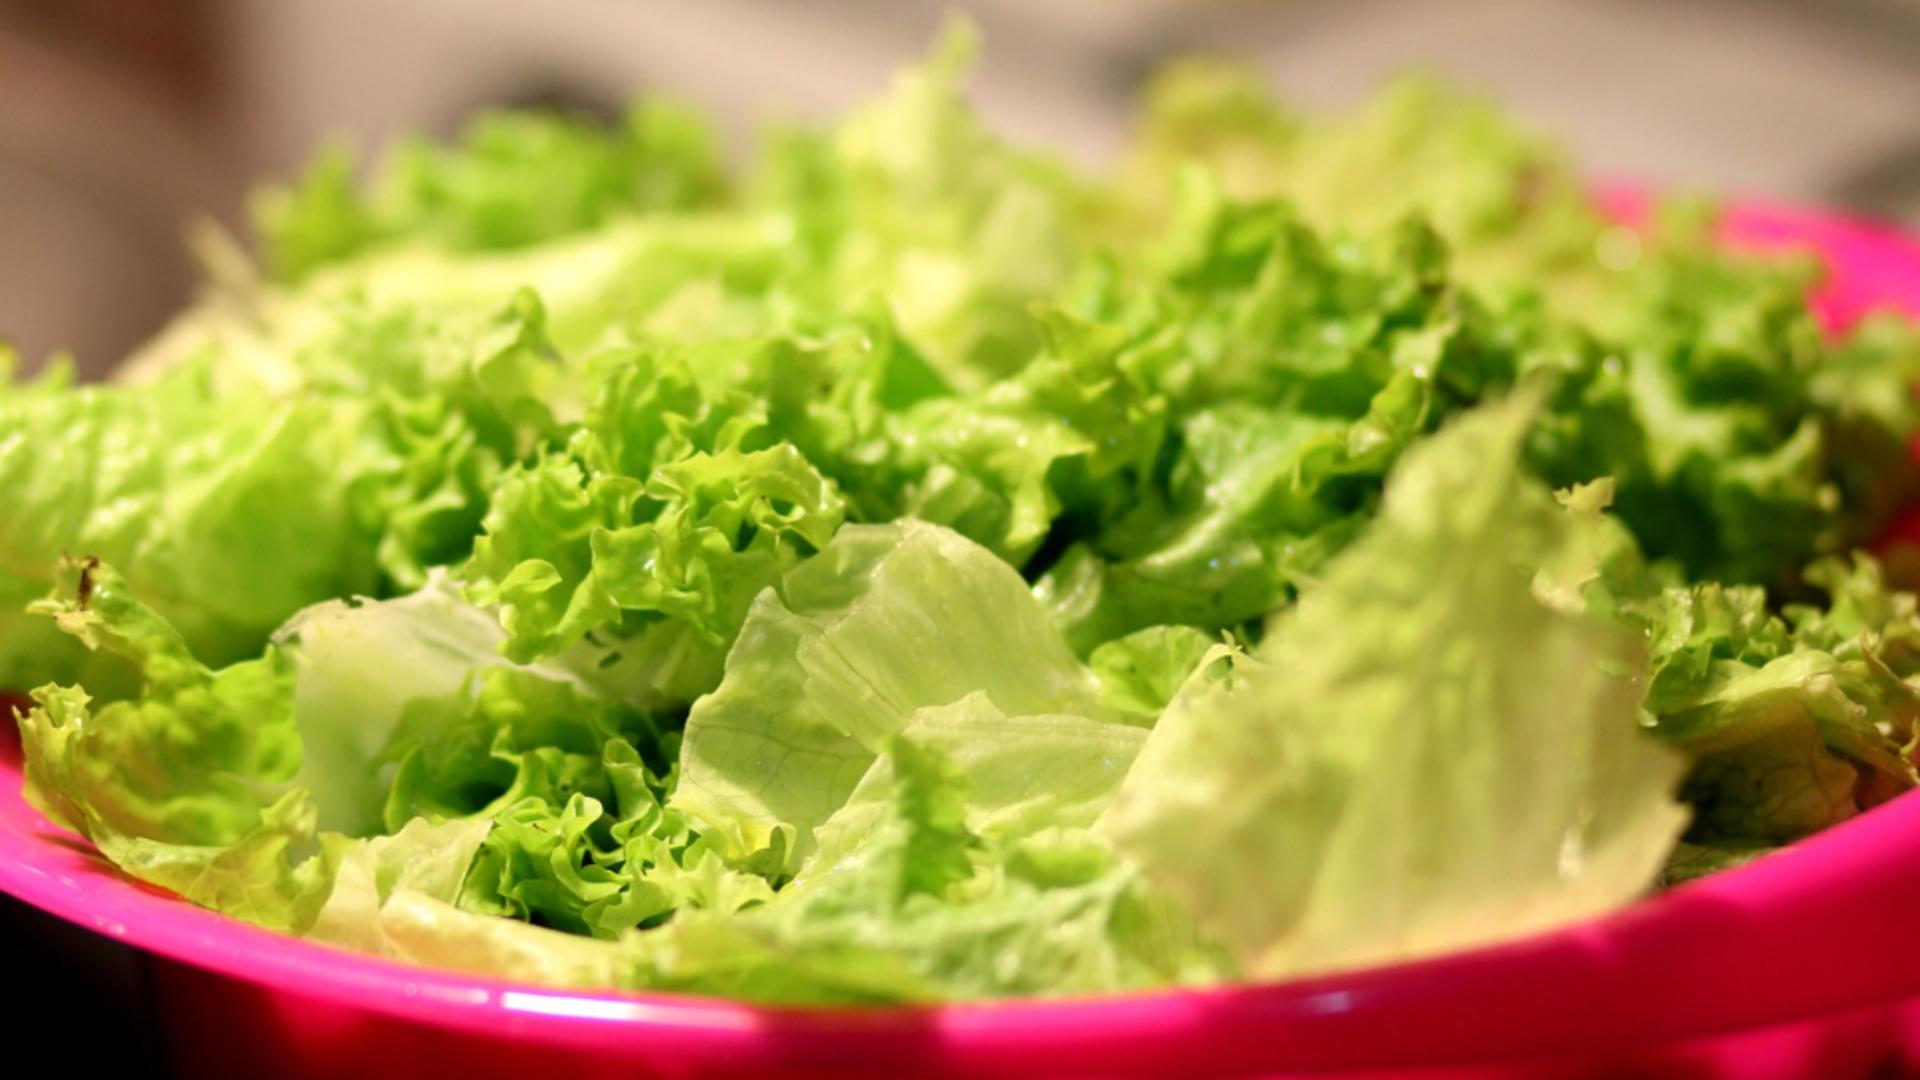  Cum poți păstra salata verde și proaspătă timp de o săptămână. Trucuri pentru gospodine